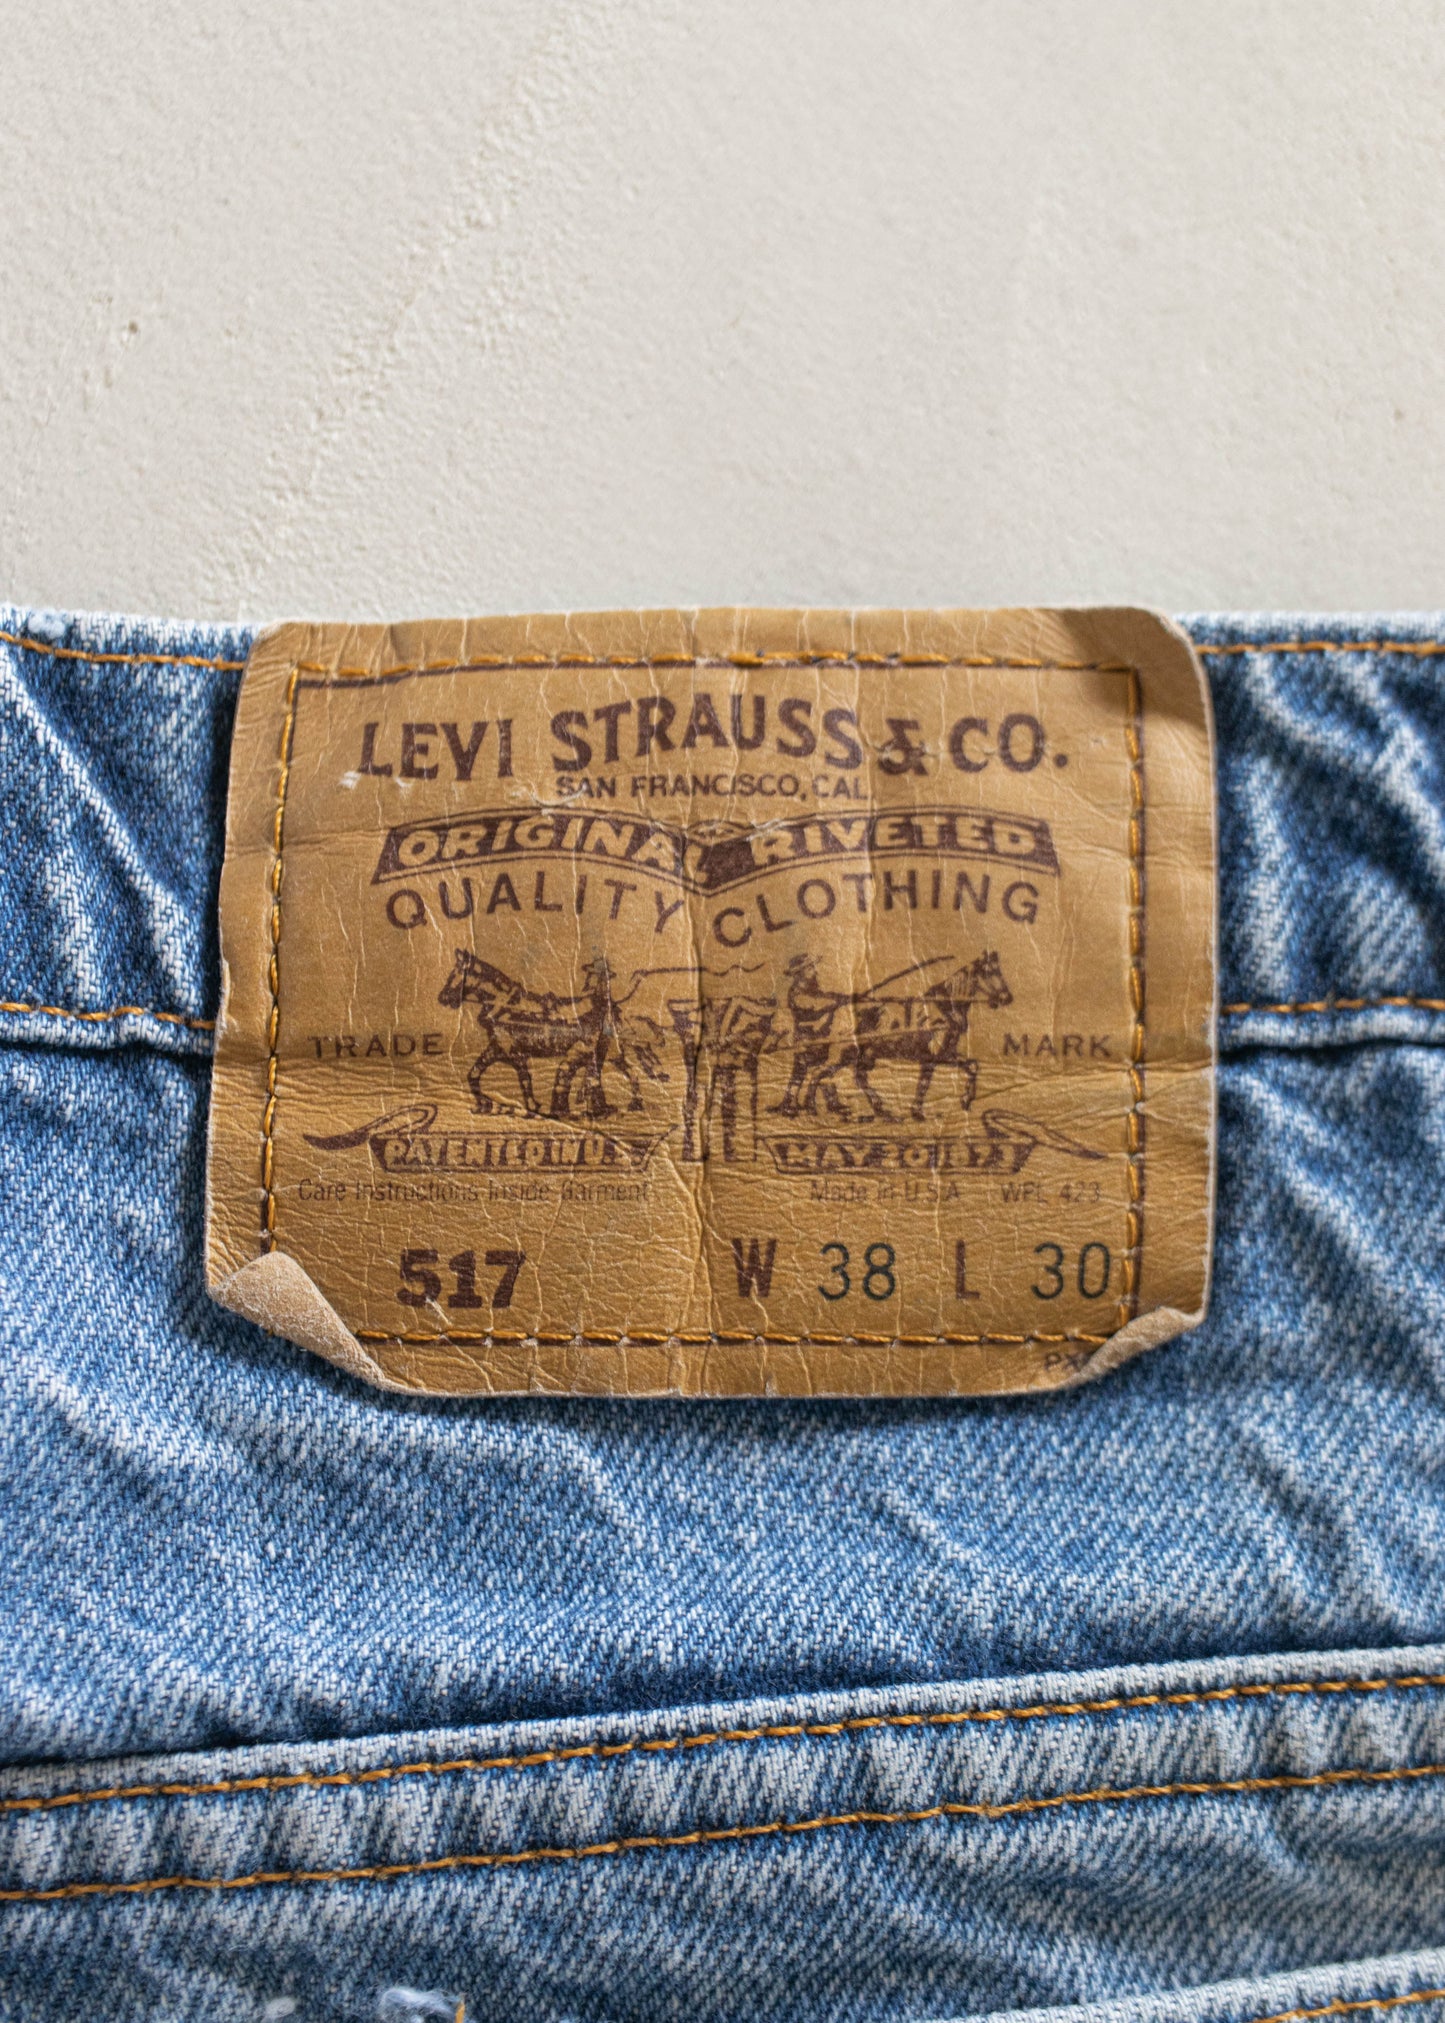 1980s Levi's 517 Midwash Jeans Size Women's 33 Men's 36